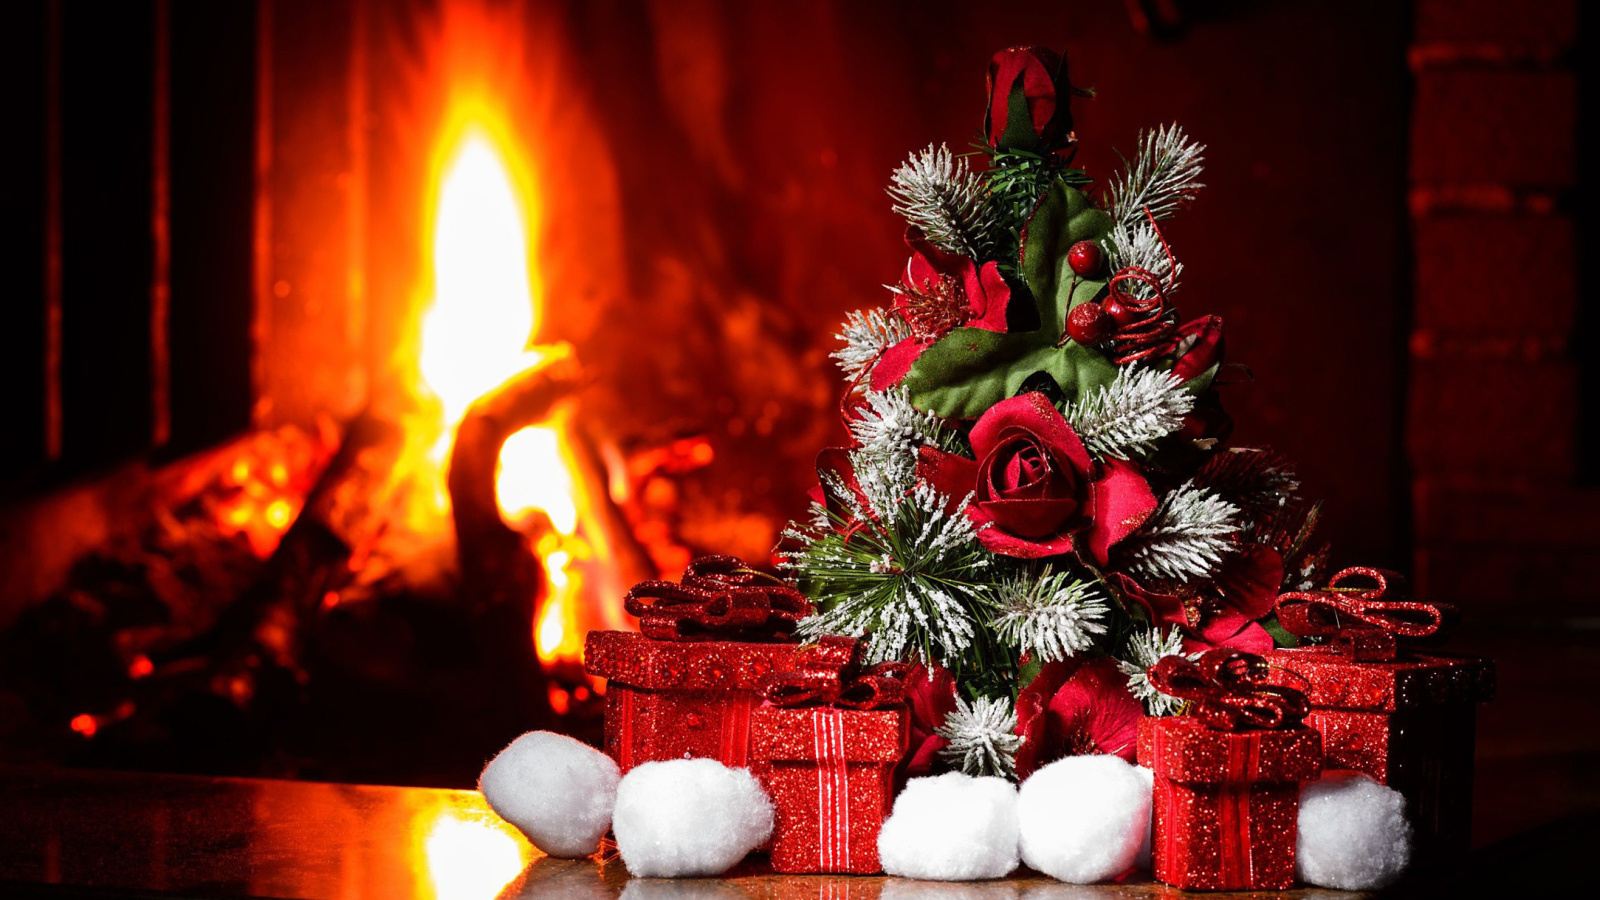 Christmas near Fireplace wallpaper 1600x900